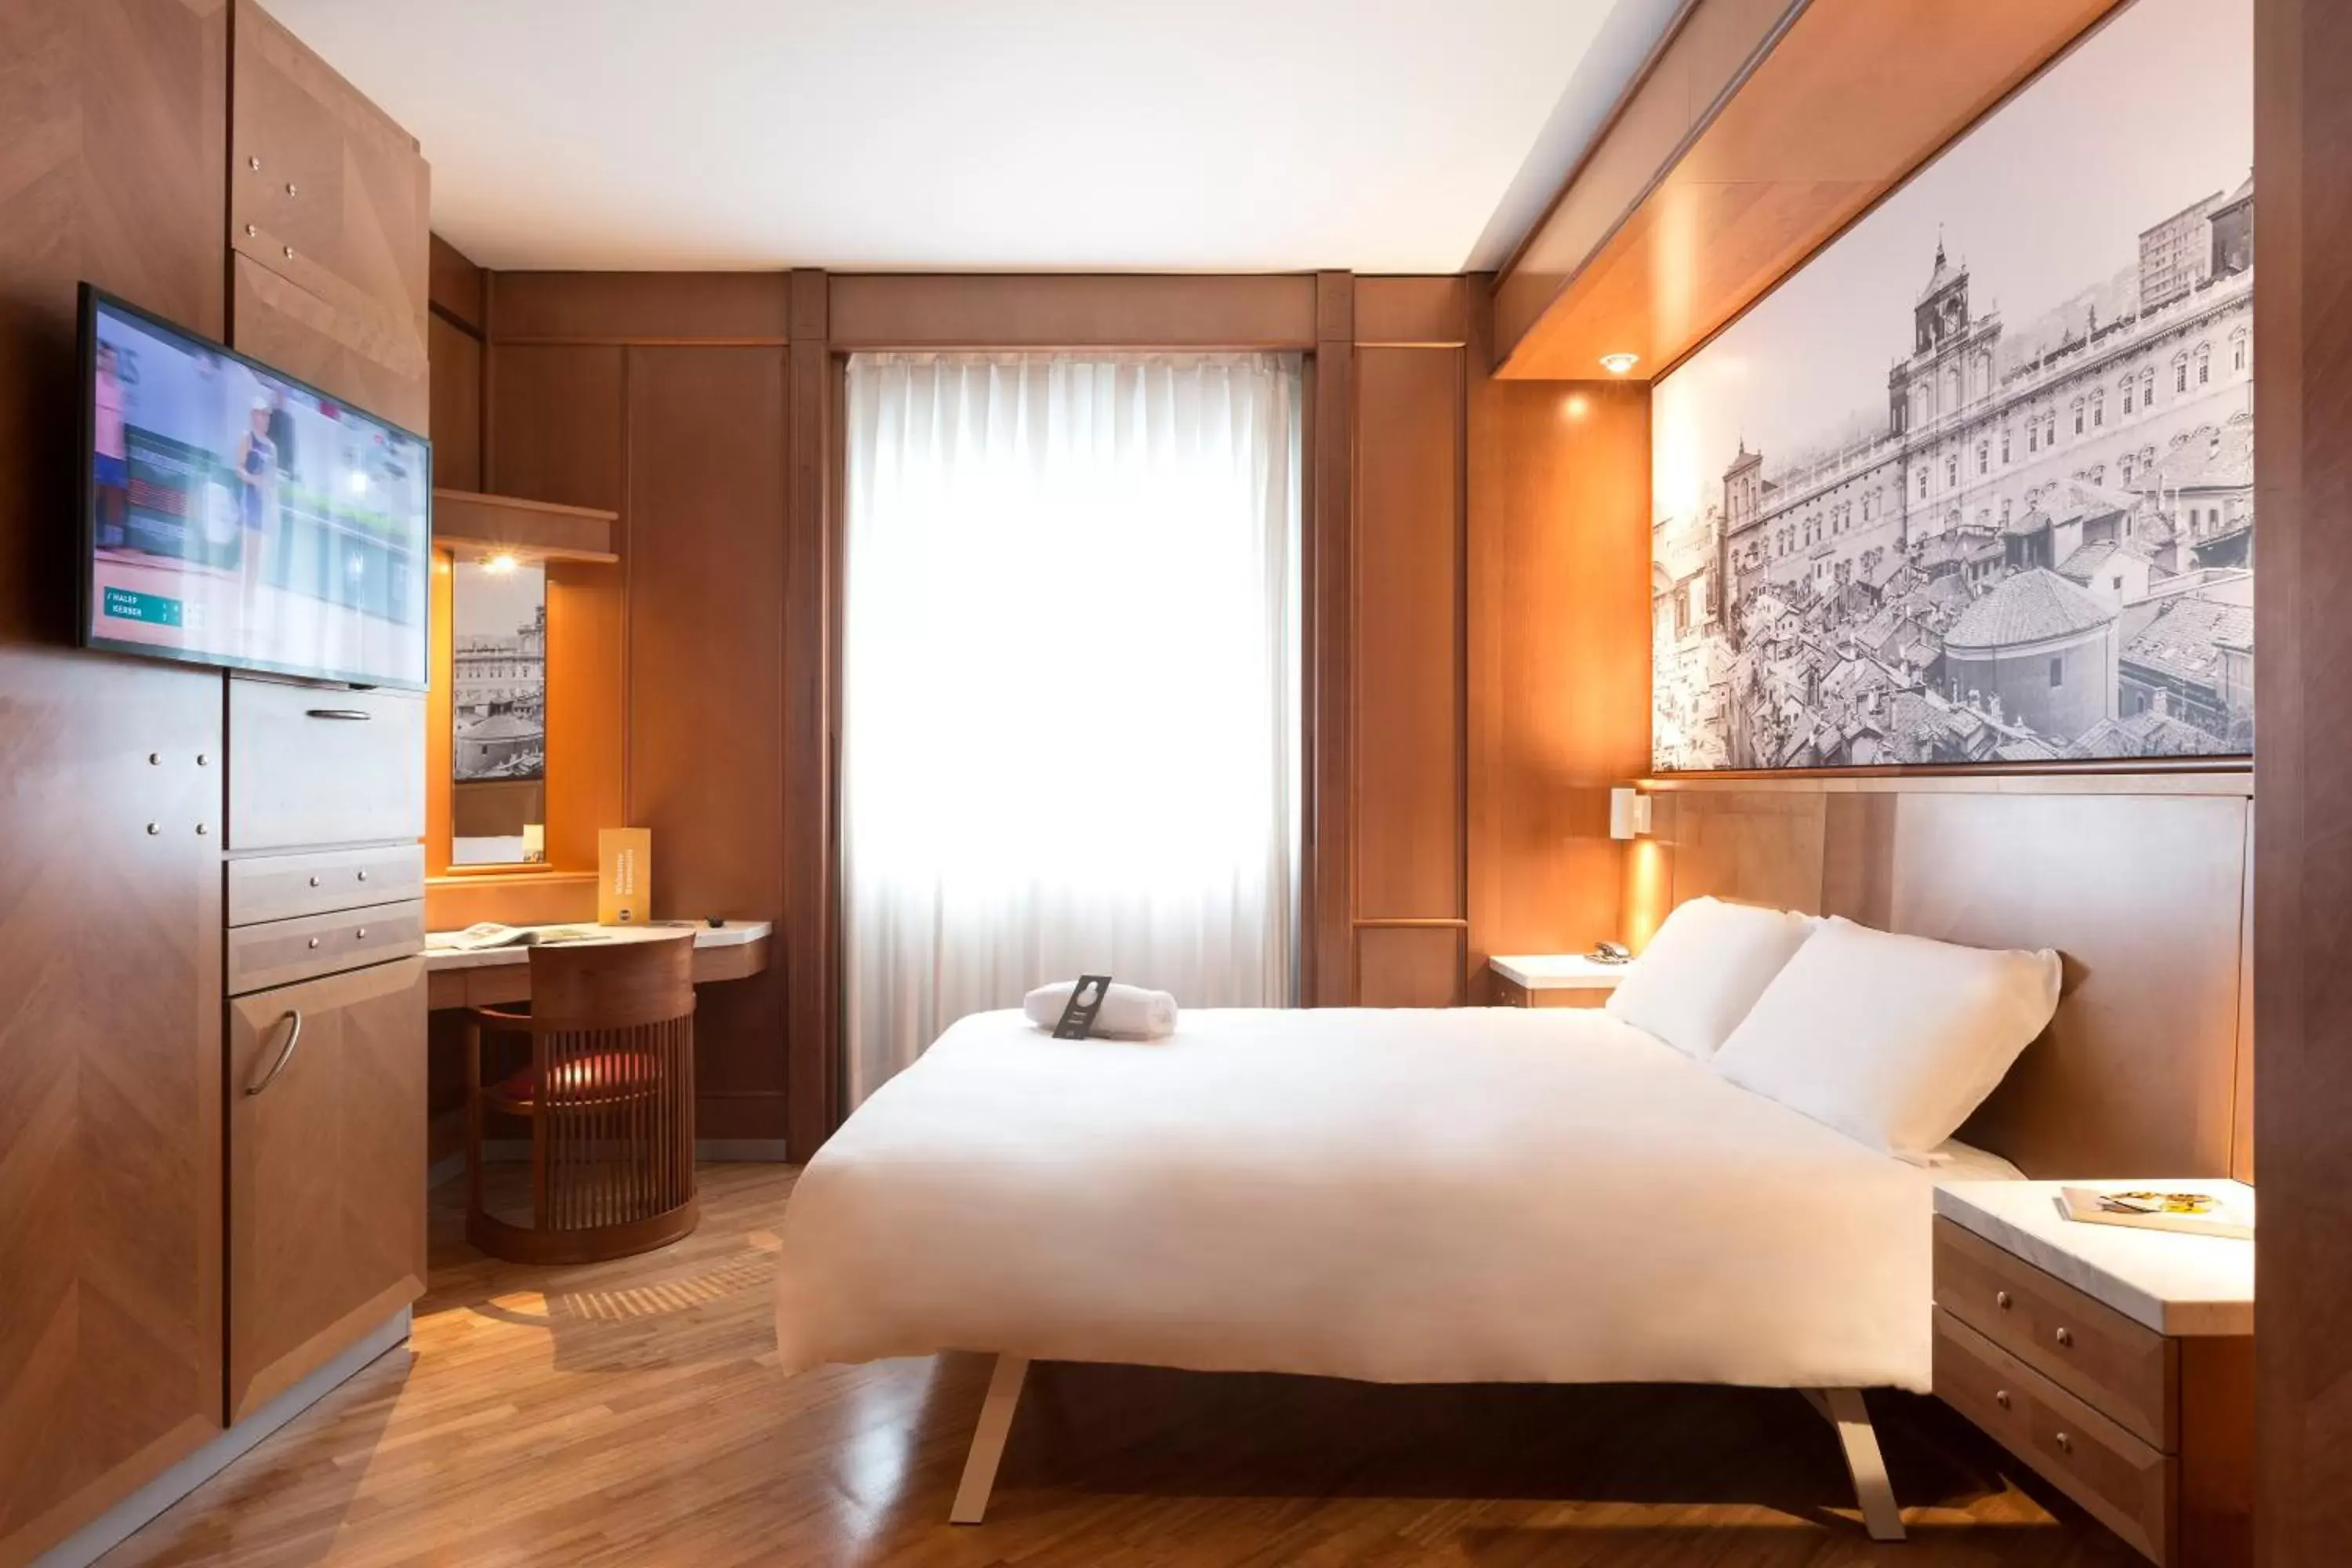 Bedroom in B&B Hotel Modena